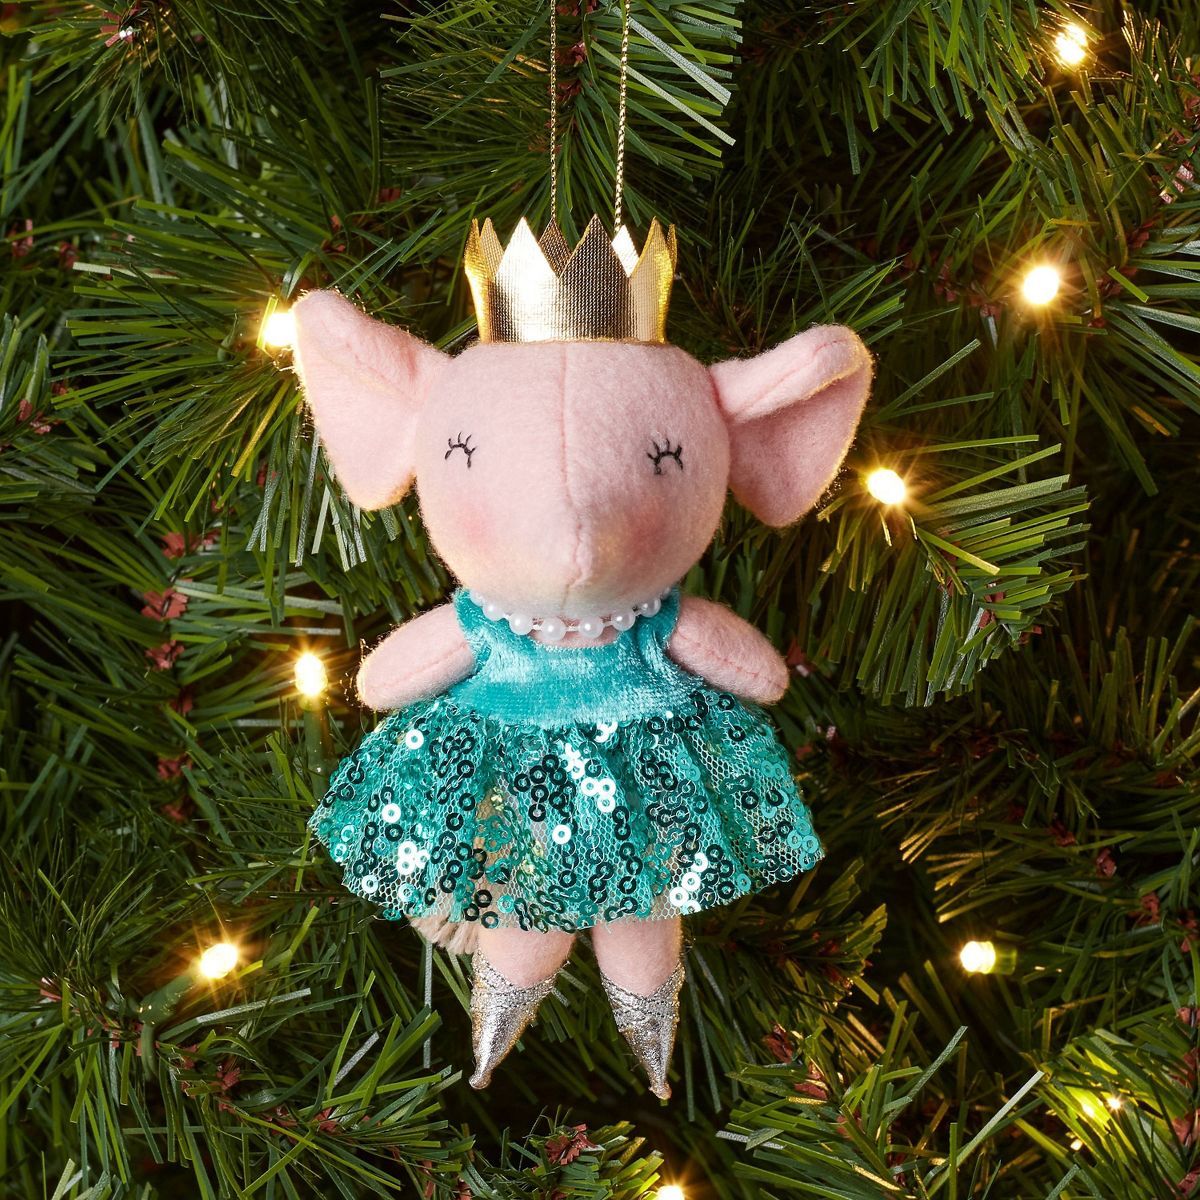 Felt Ballet Dancer Mouse with Sequined Tutu Christmas Tree Ornament Pink/Blue - Wondershop™ | Target